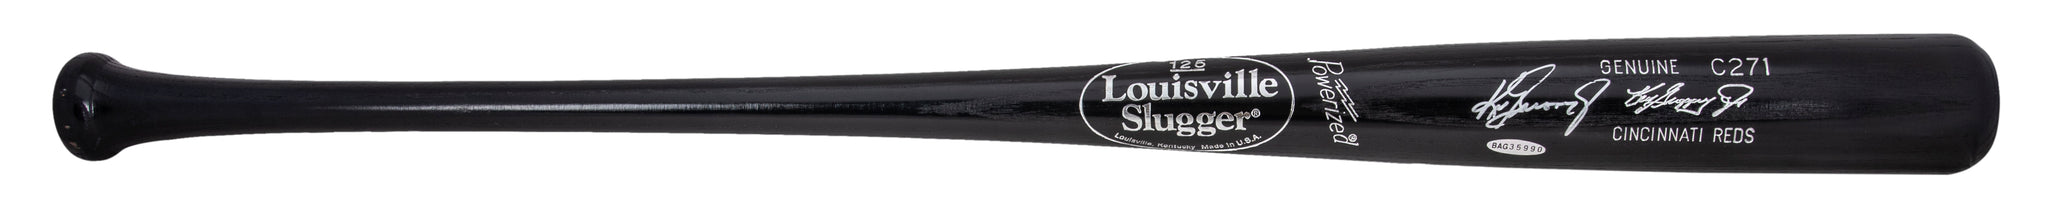 Ken Griffey Jr. Autographed Louisville Slugger Game Model Bat